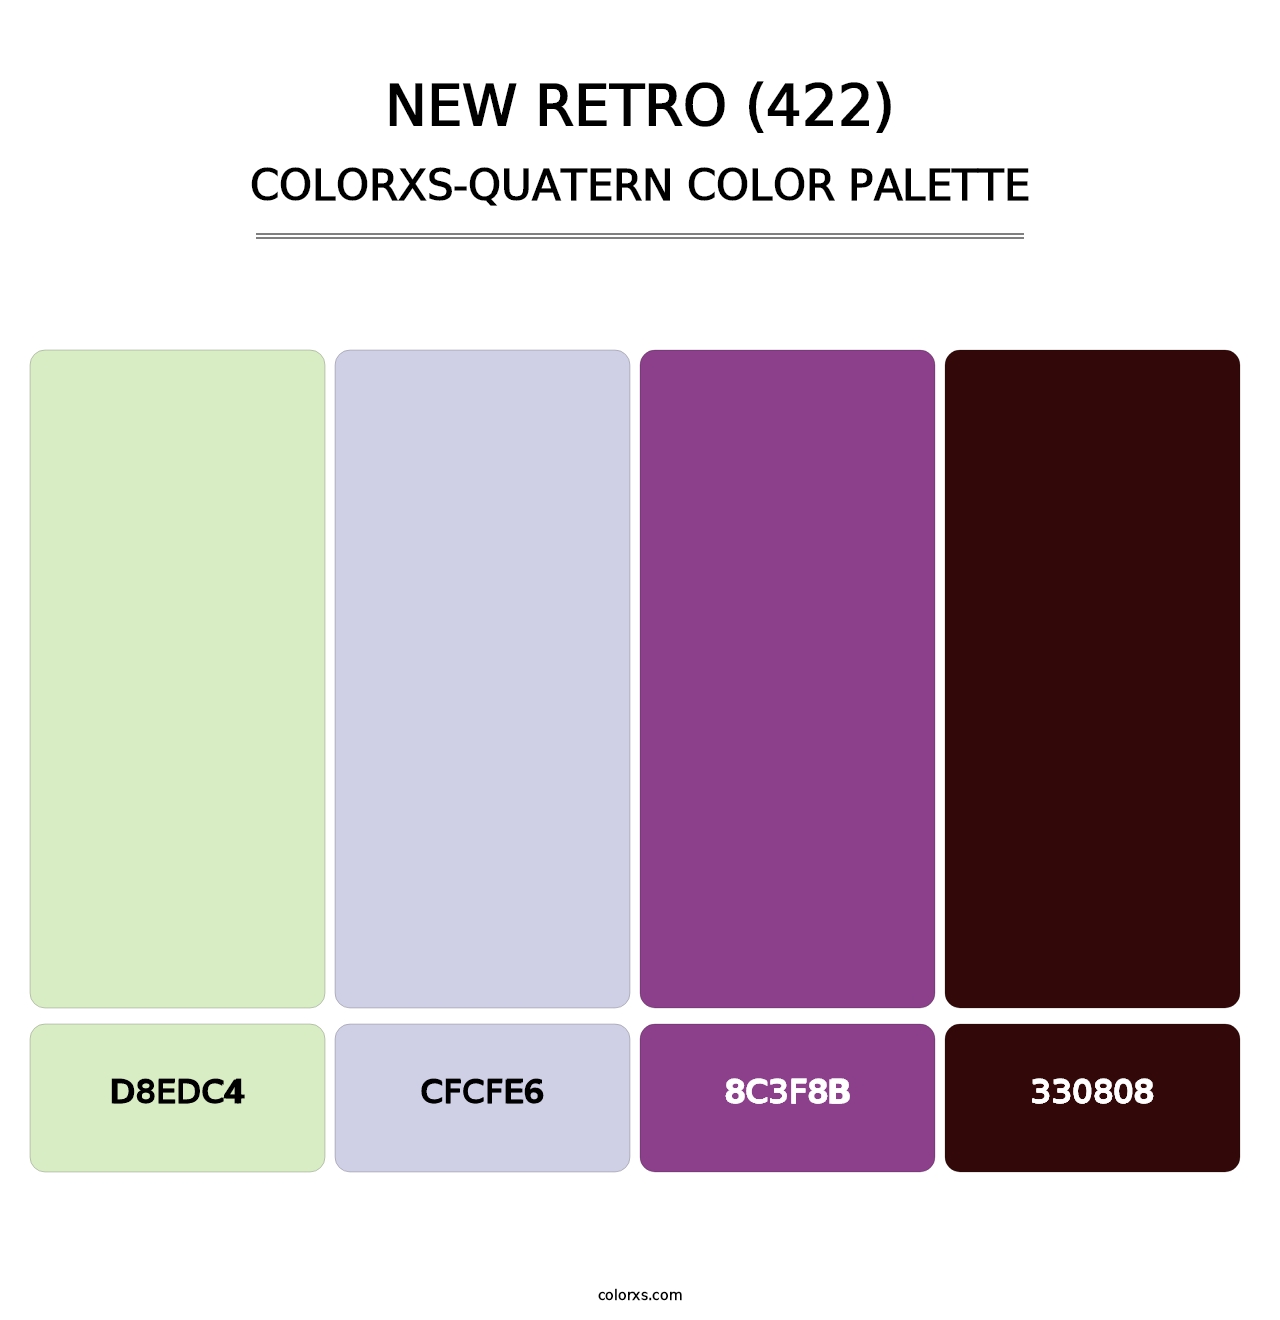 New Retro (422) - Colorxs Quatern Palette